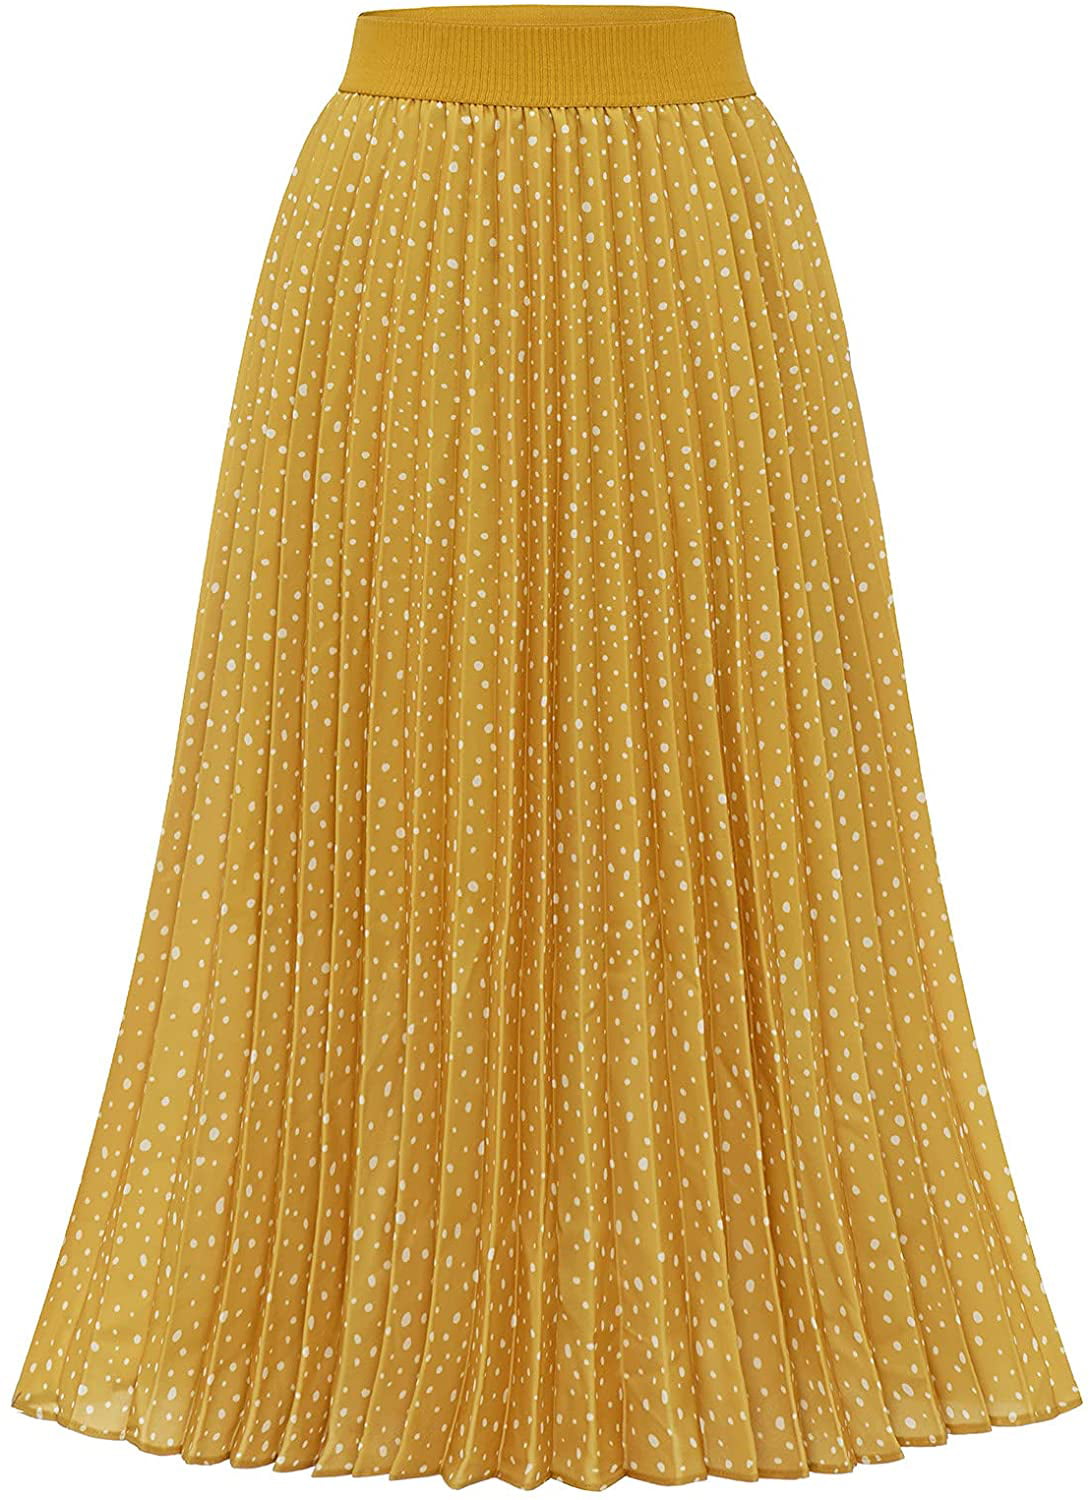 DRESSTELLS Summer Pleated Midi Skirts for Women Midi Length High Waist Spring A-Line Skirt 